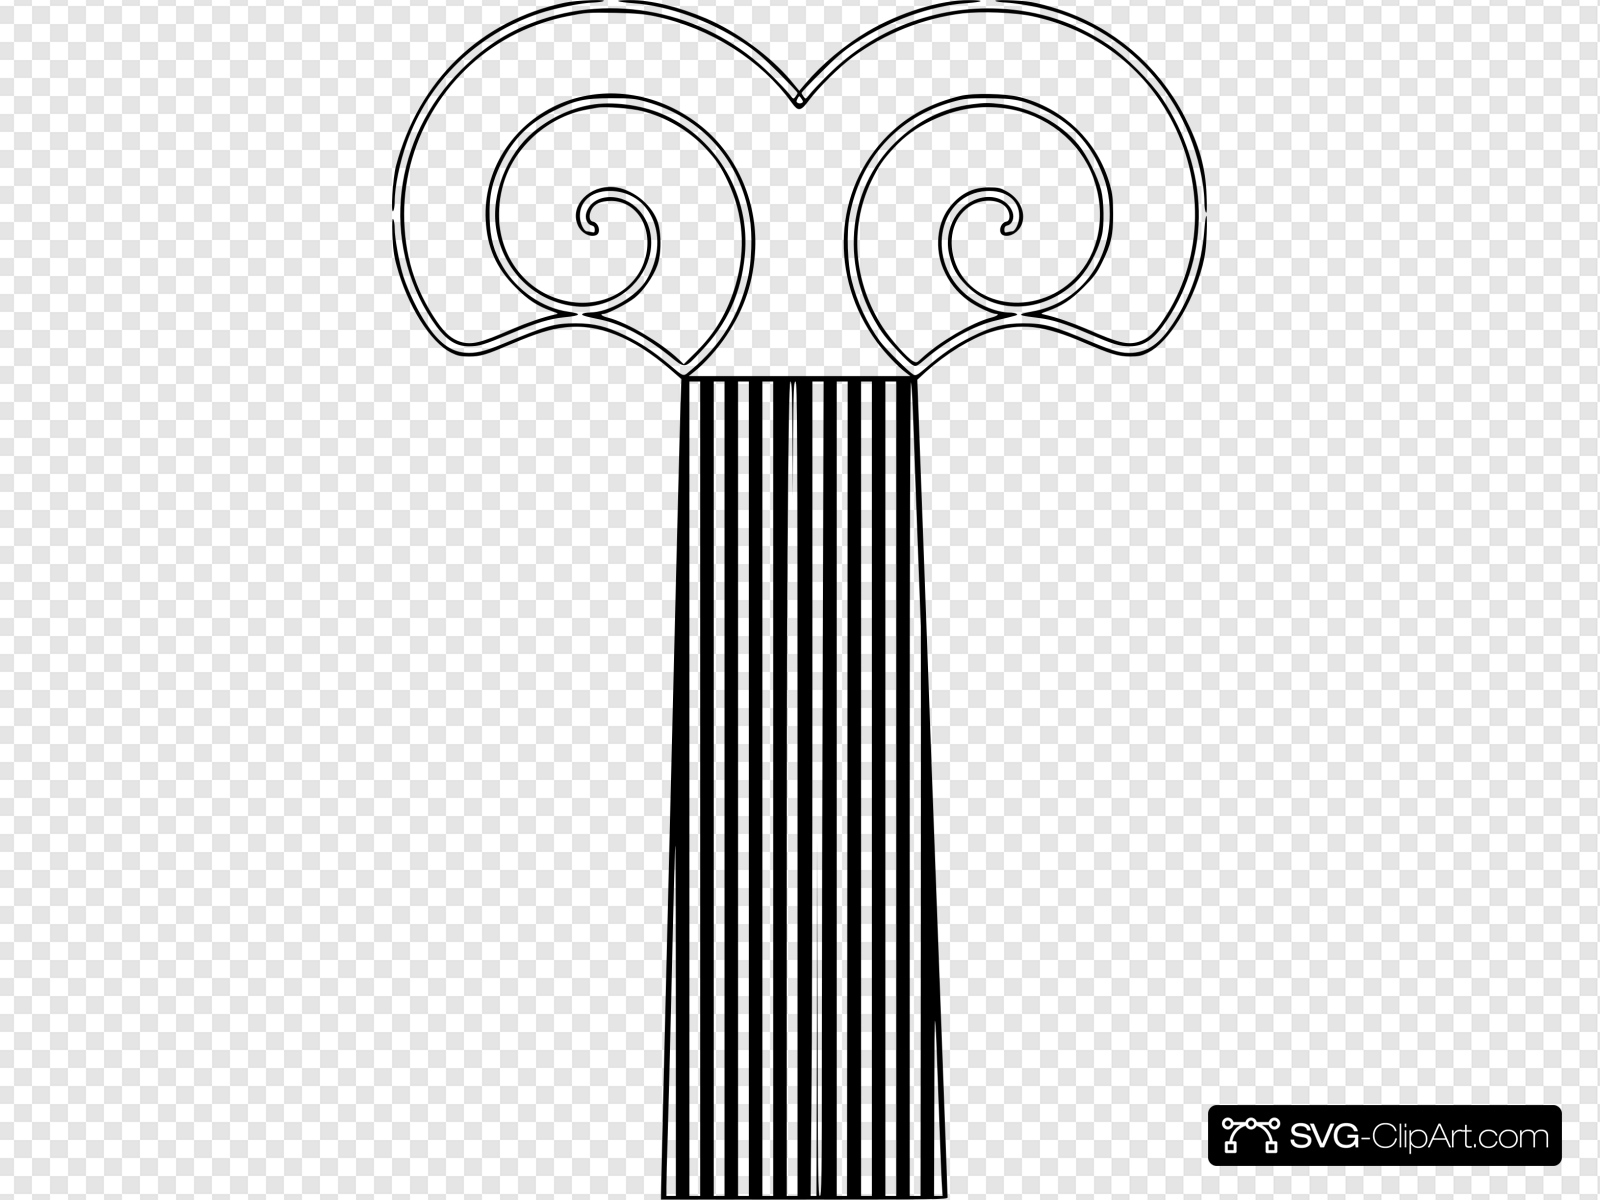 Decorative Pillar Clip art, Icon and SVG